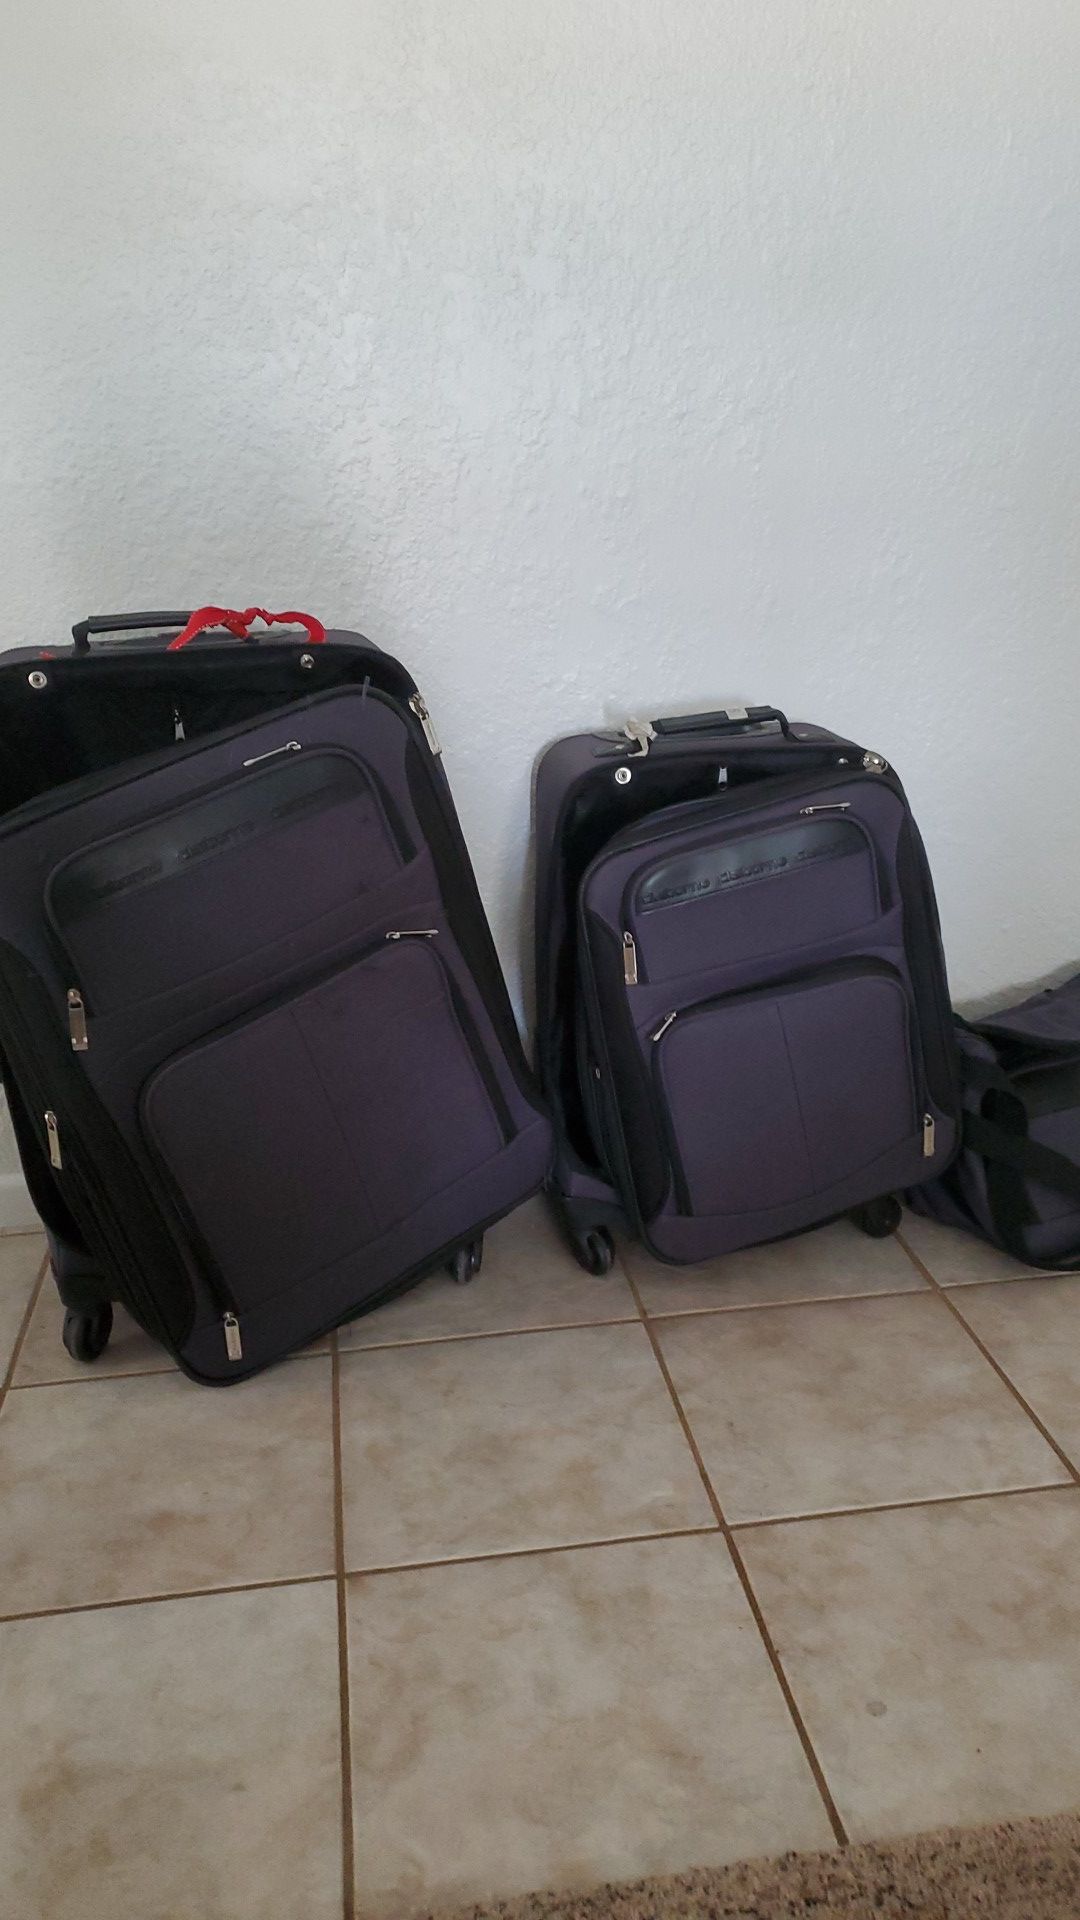 Claiborne Suitcase Set